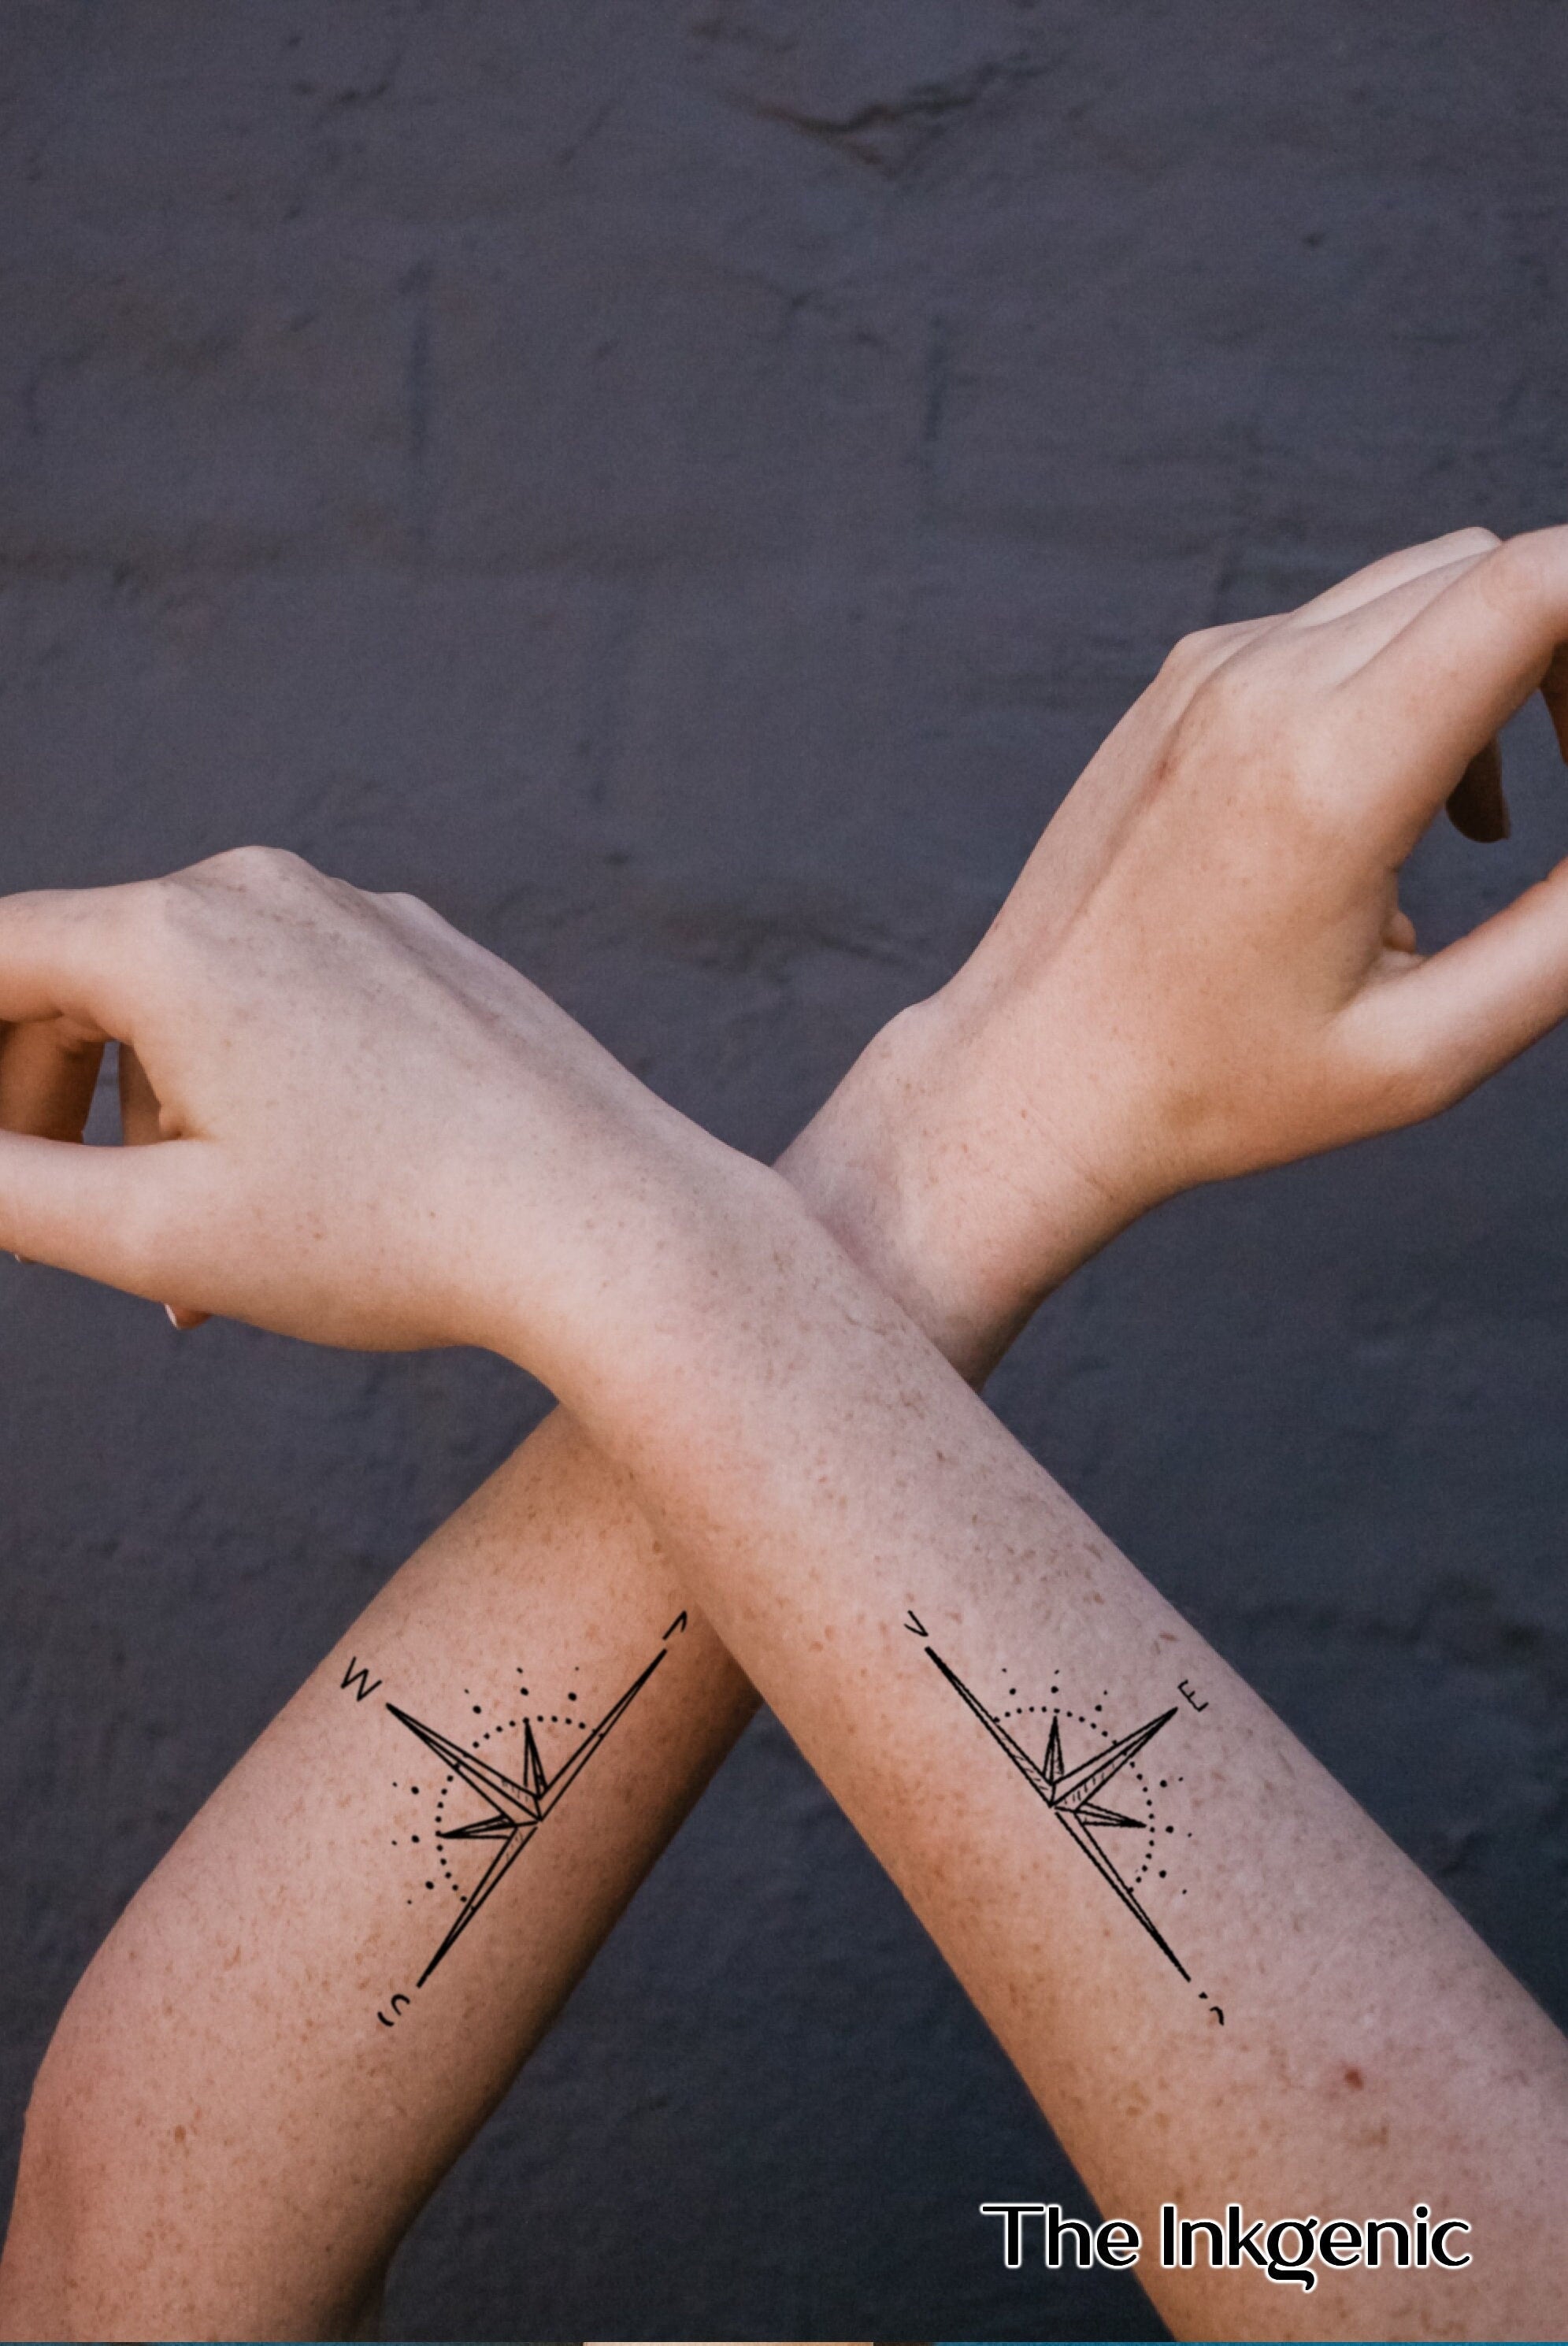 Post #1 — Attitudes Towards Tattoos in Society | by Tiffiny Jade | Medium